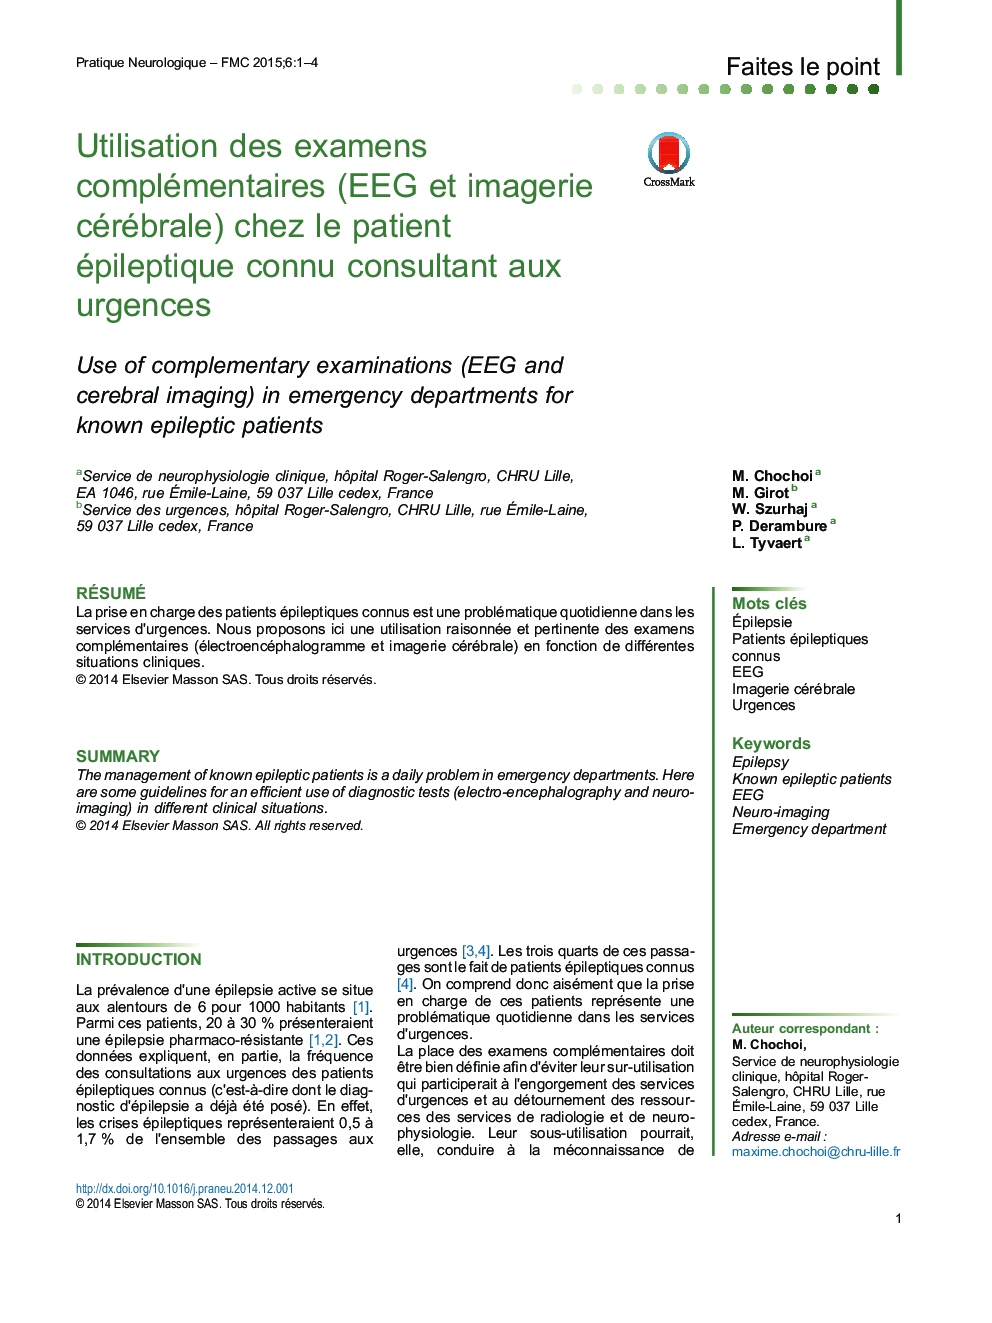 Utilisation des examens complémentaires (EEG et imagerie cérébrale) chez le patient épileptique connu consultant aux urgences